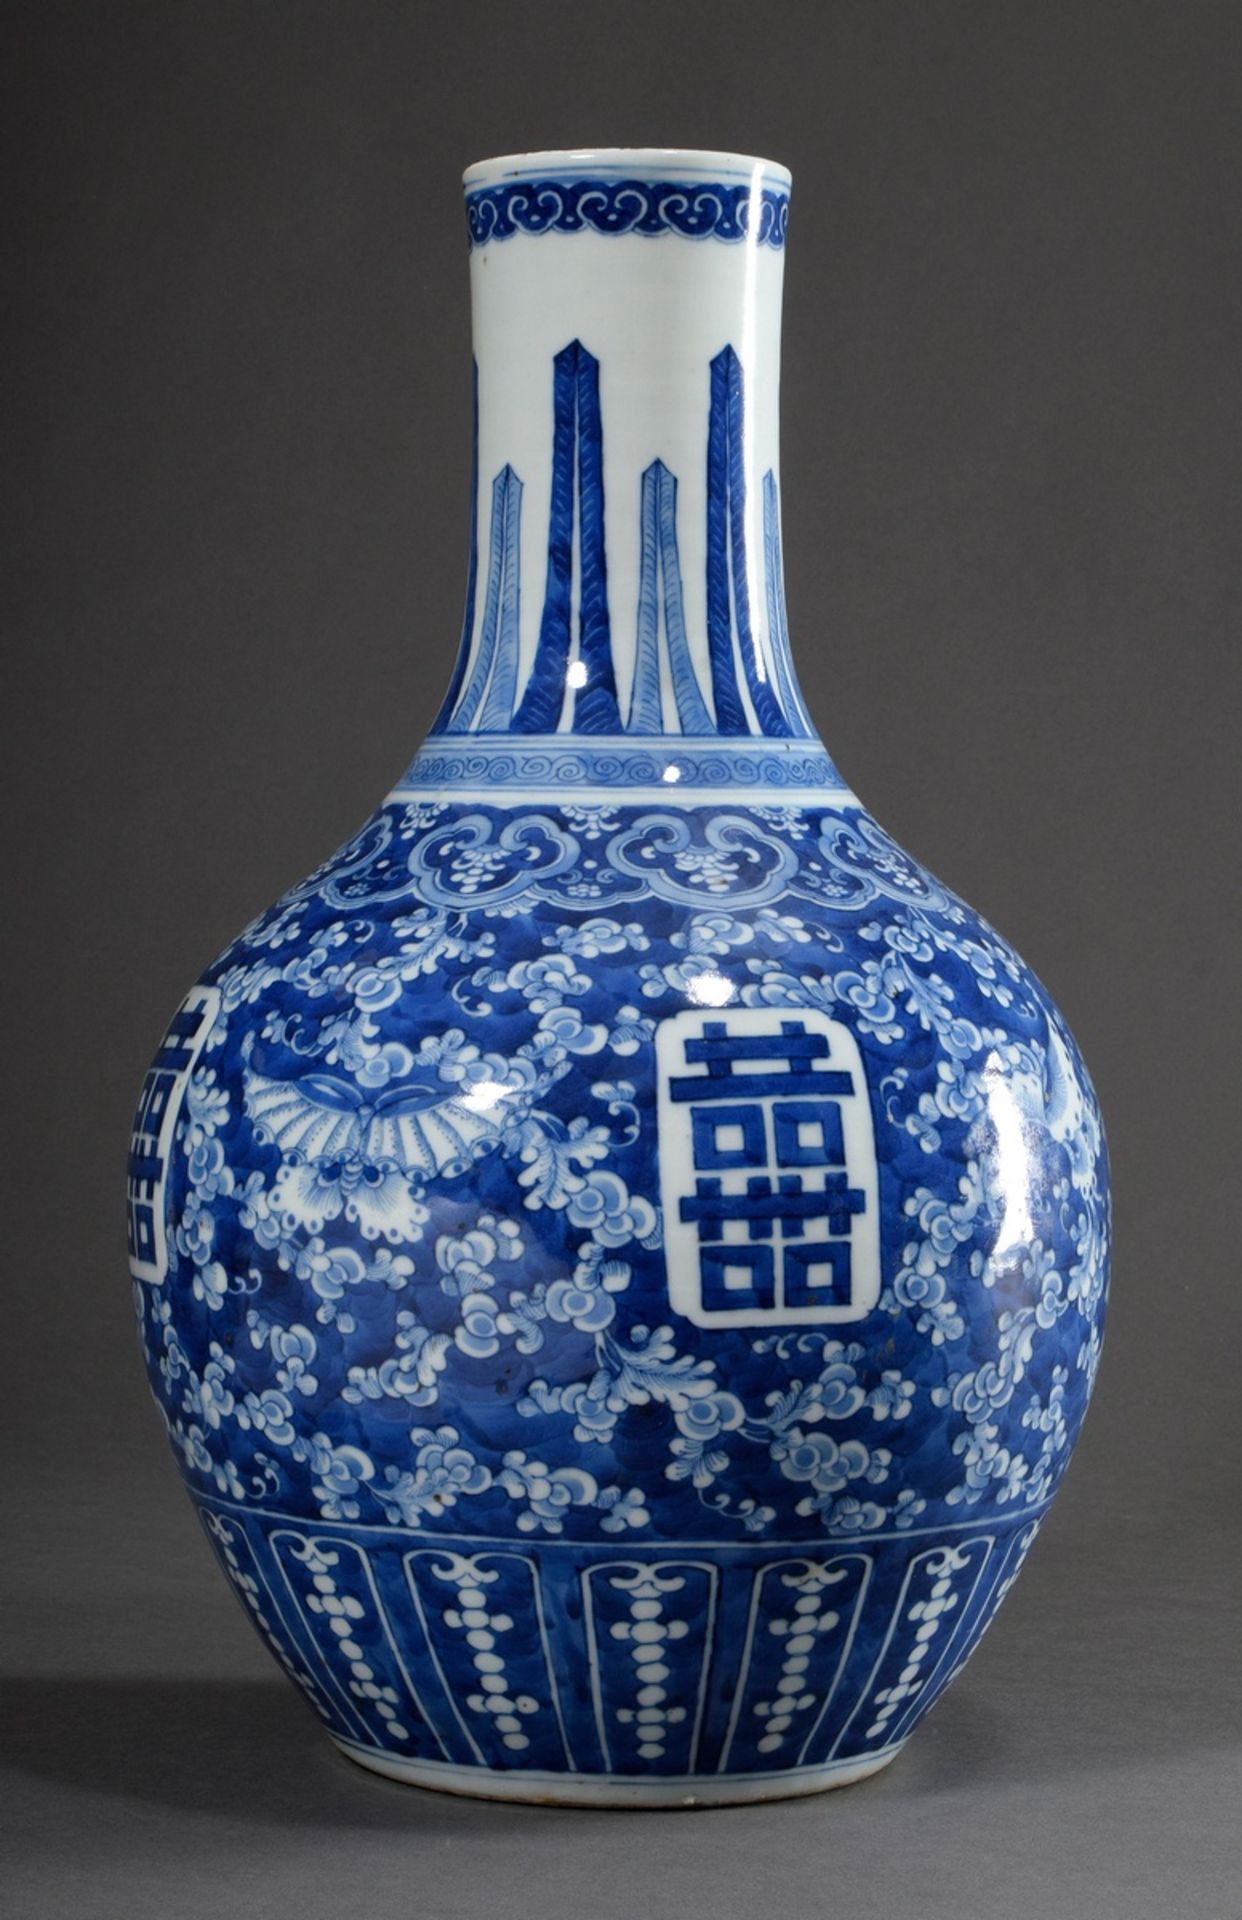 Chinesische Tianqiuping Porzellan Vase mit floralen Blaumalerei Dekor "Schmetterlinge und Ranken" s